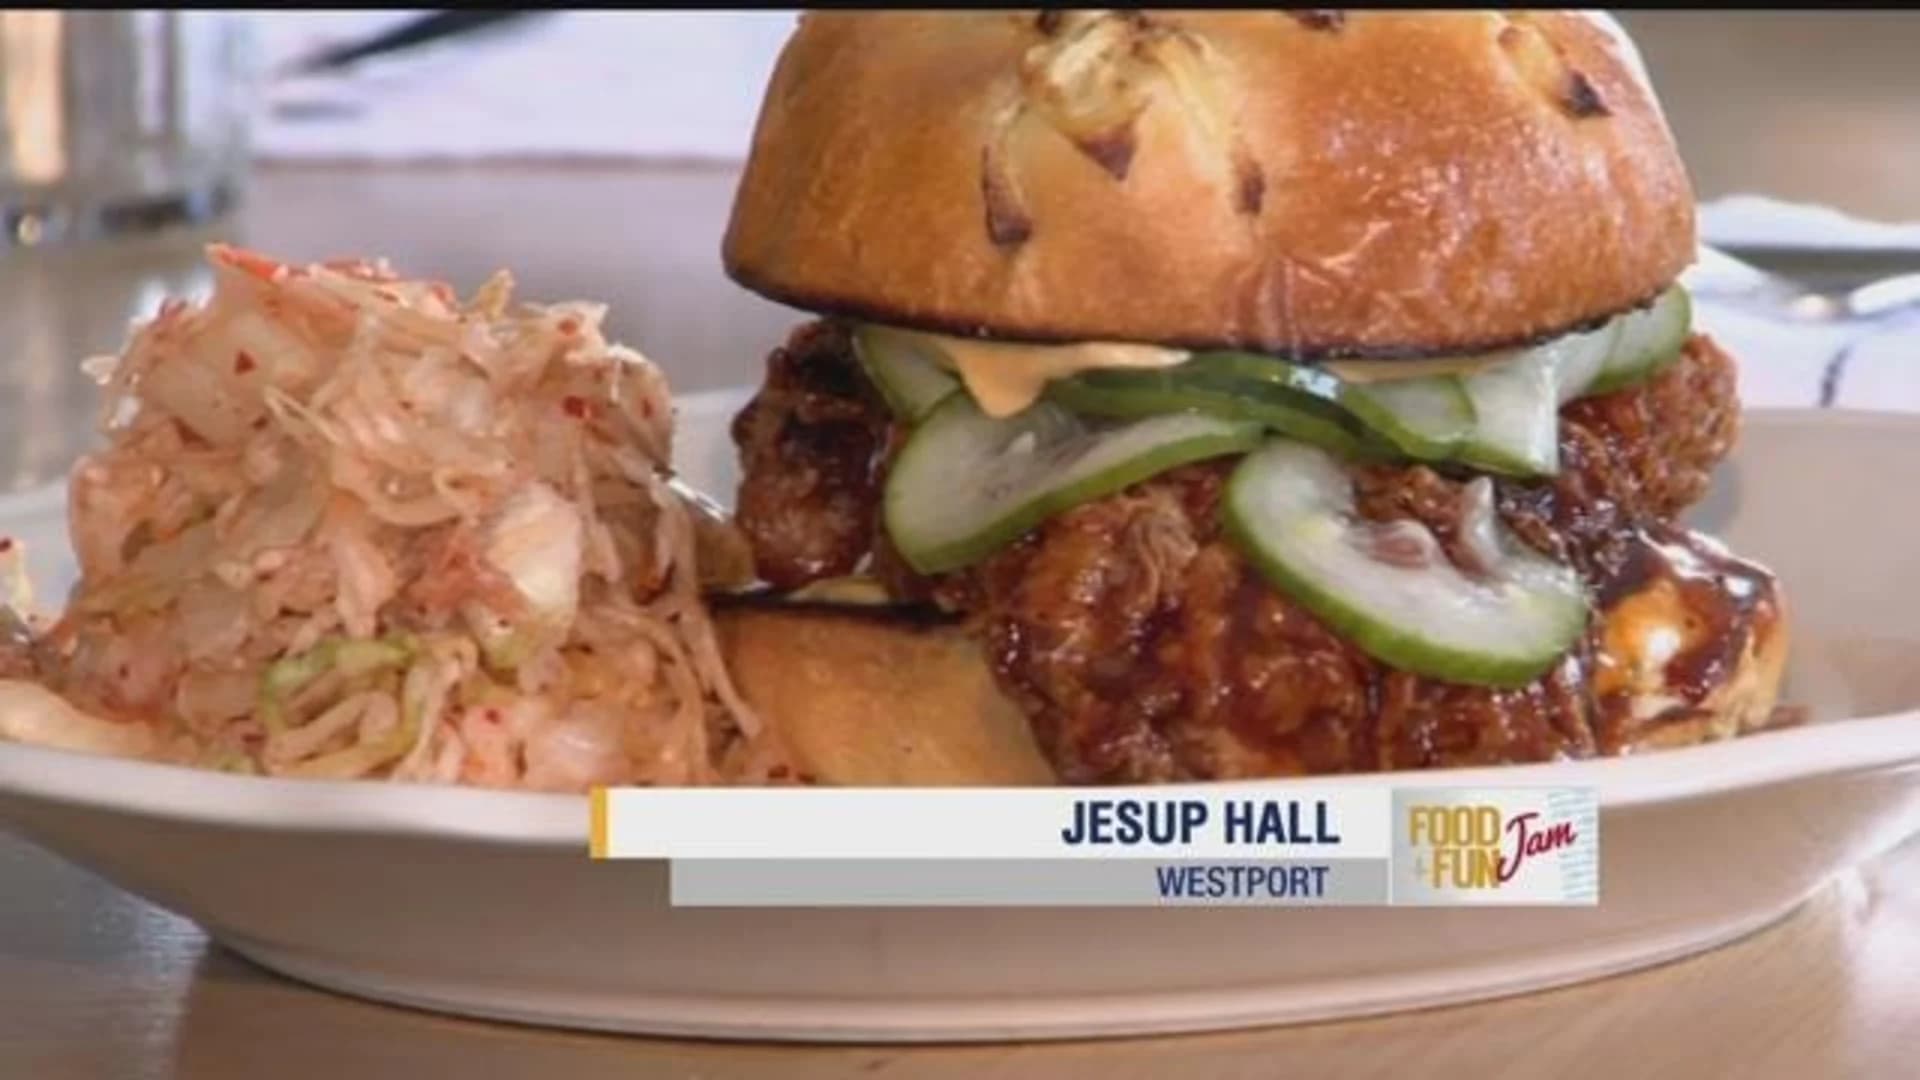 Food and Fun Jam: Jesup Hall